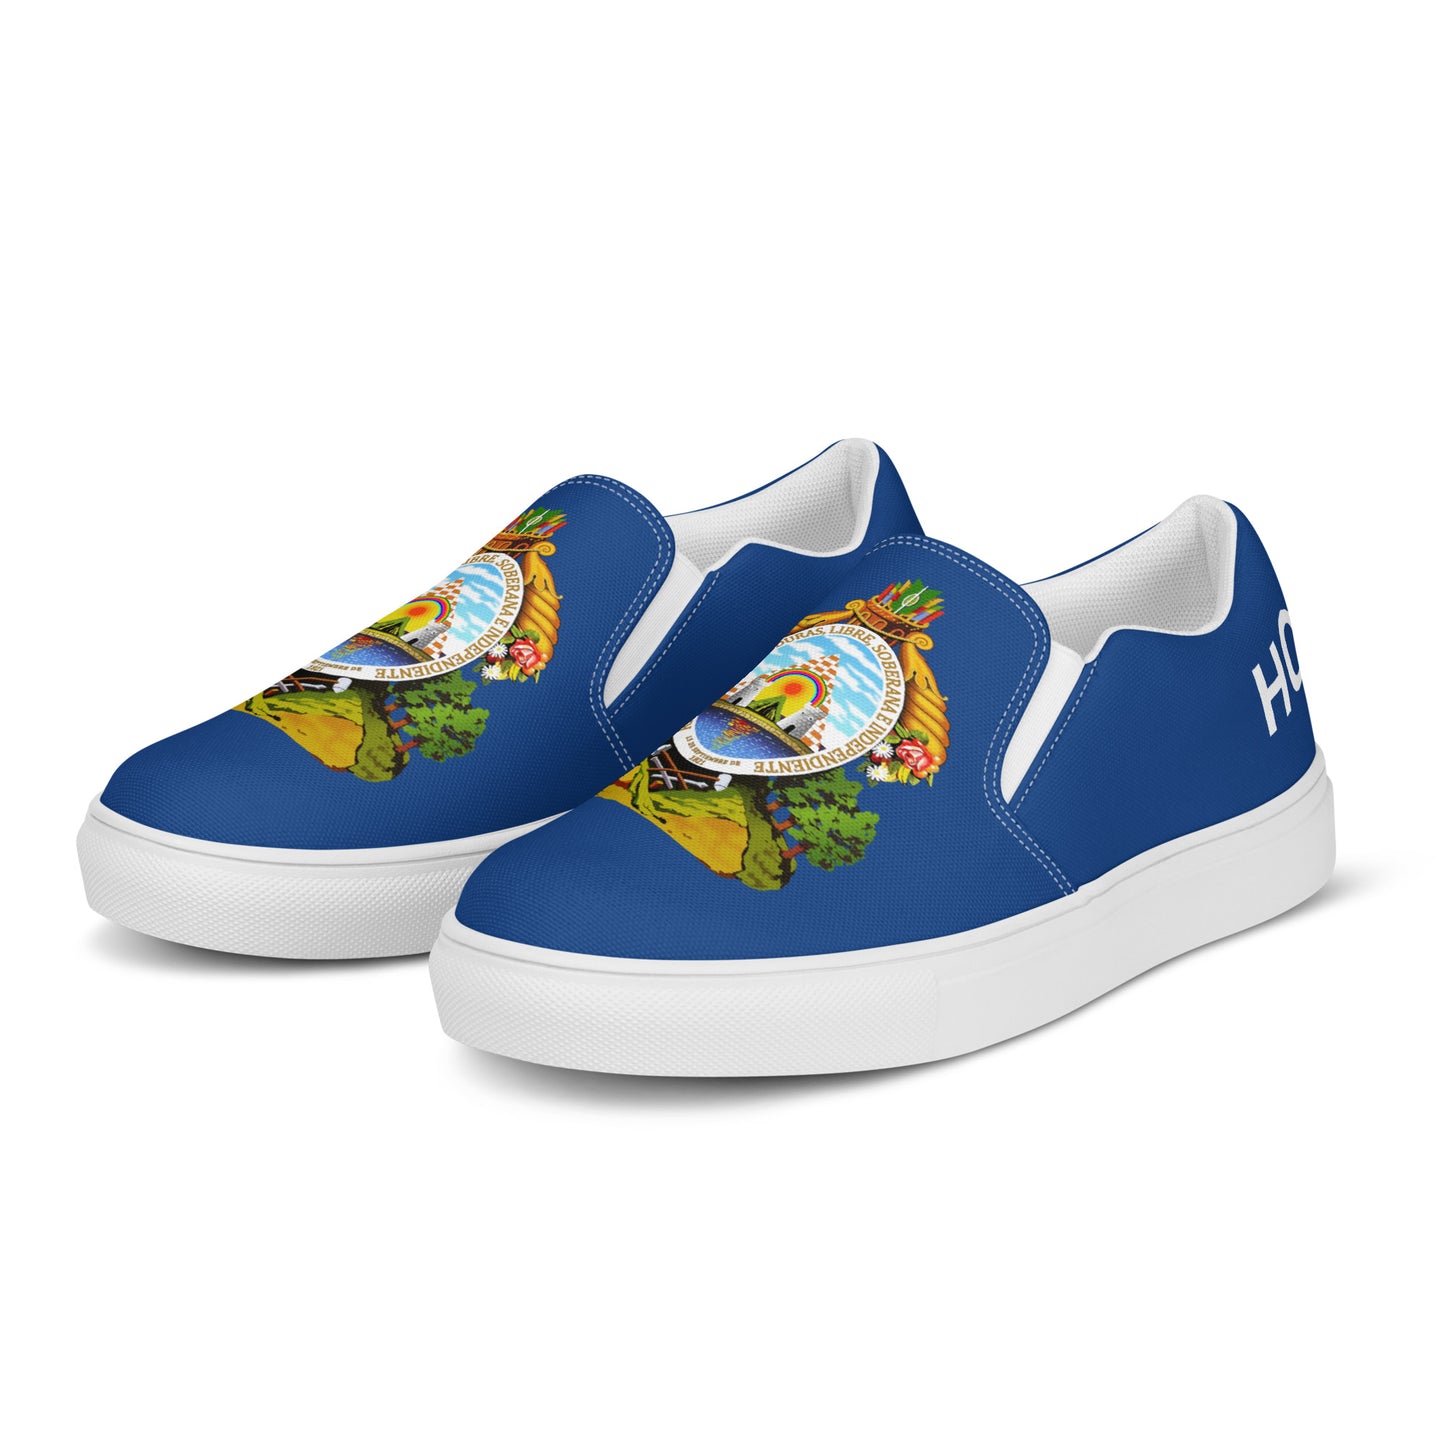 Honduras - Men - Blue - Slip-on shoes